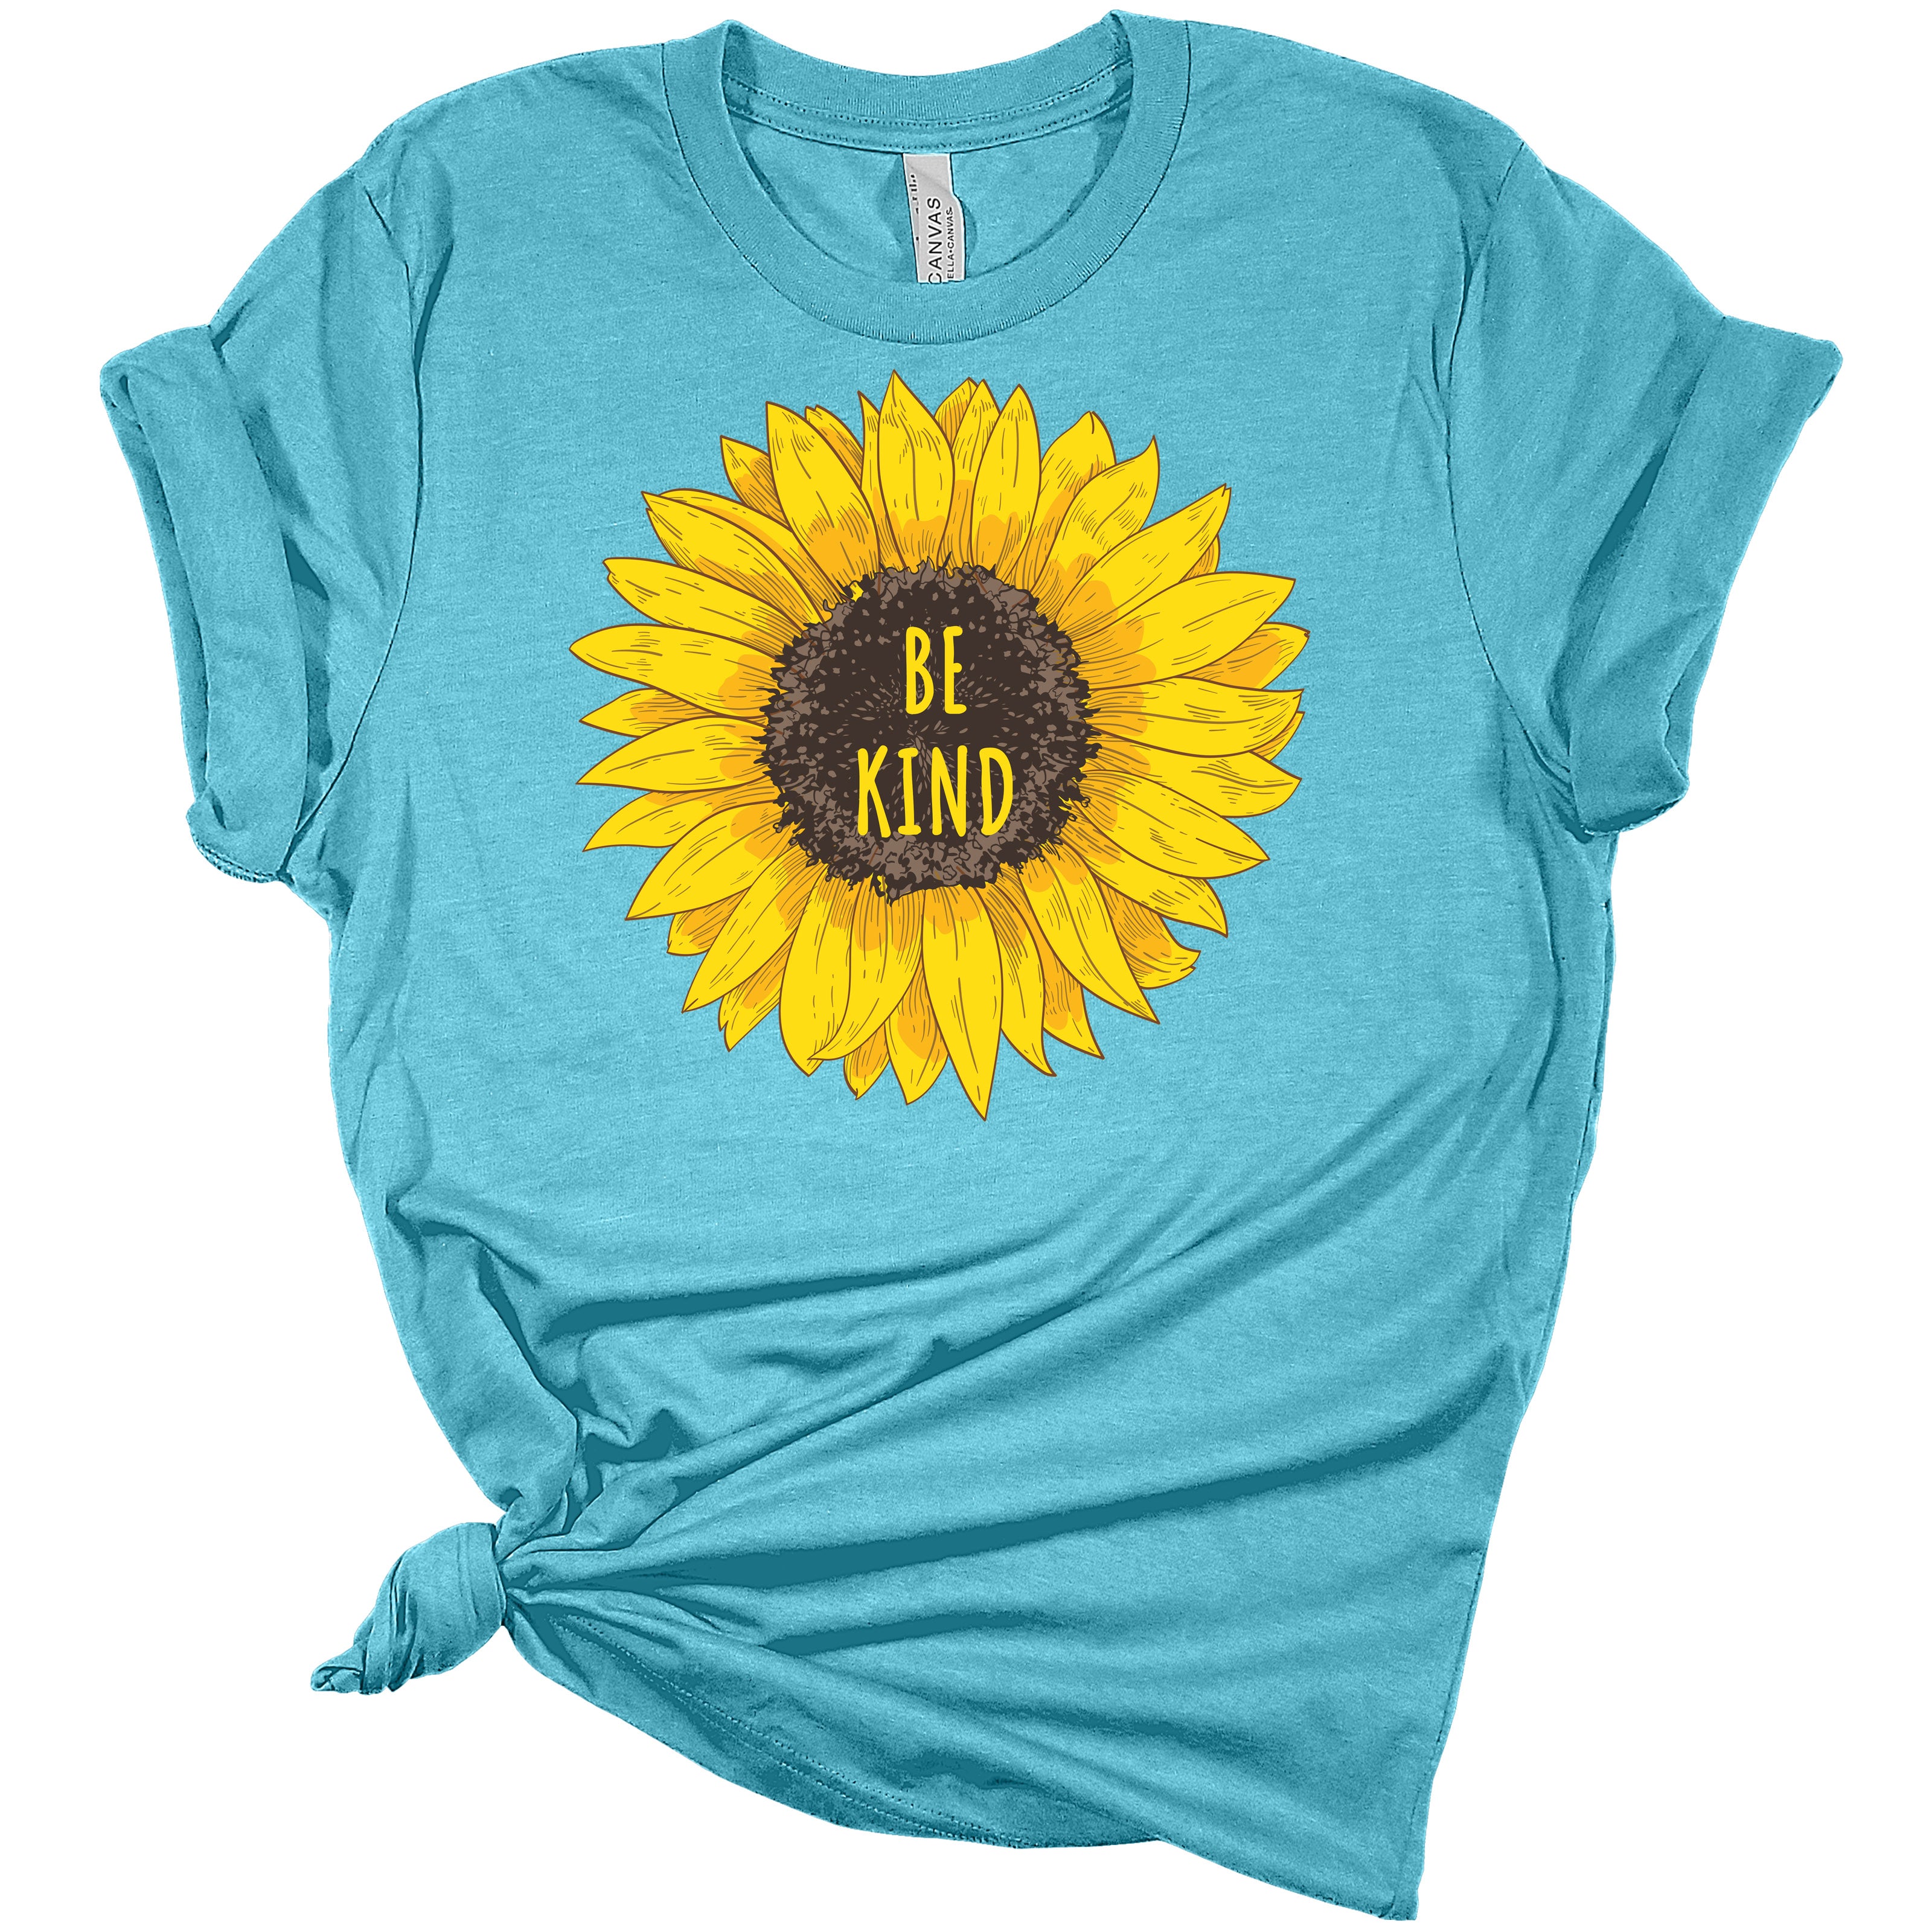 Women's Graphic Shirt Be Kind Sunflower Bella Short Sleeve Summer T-Shirt